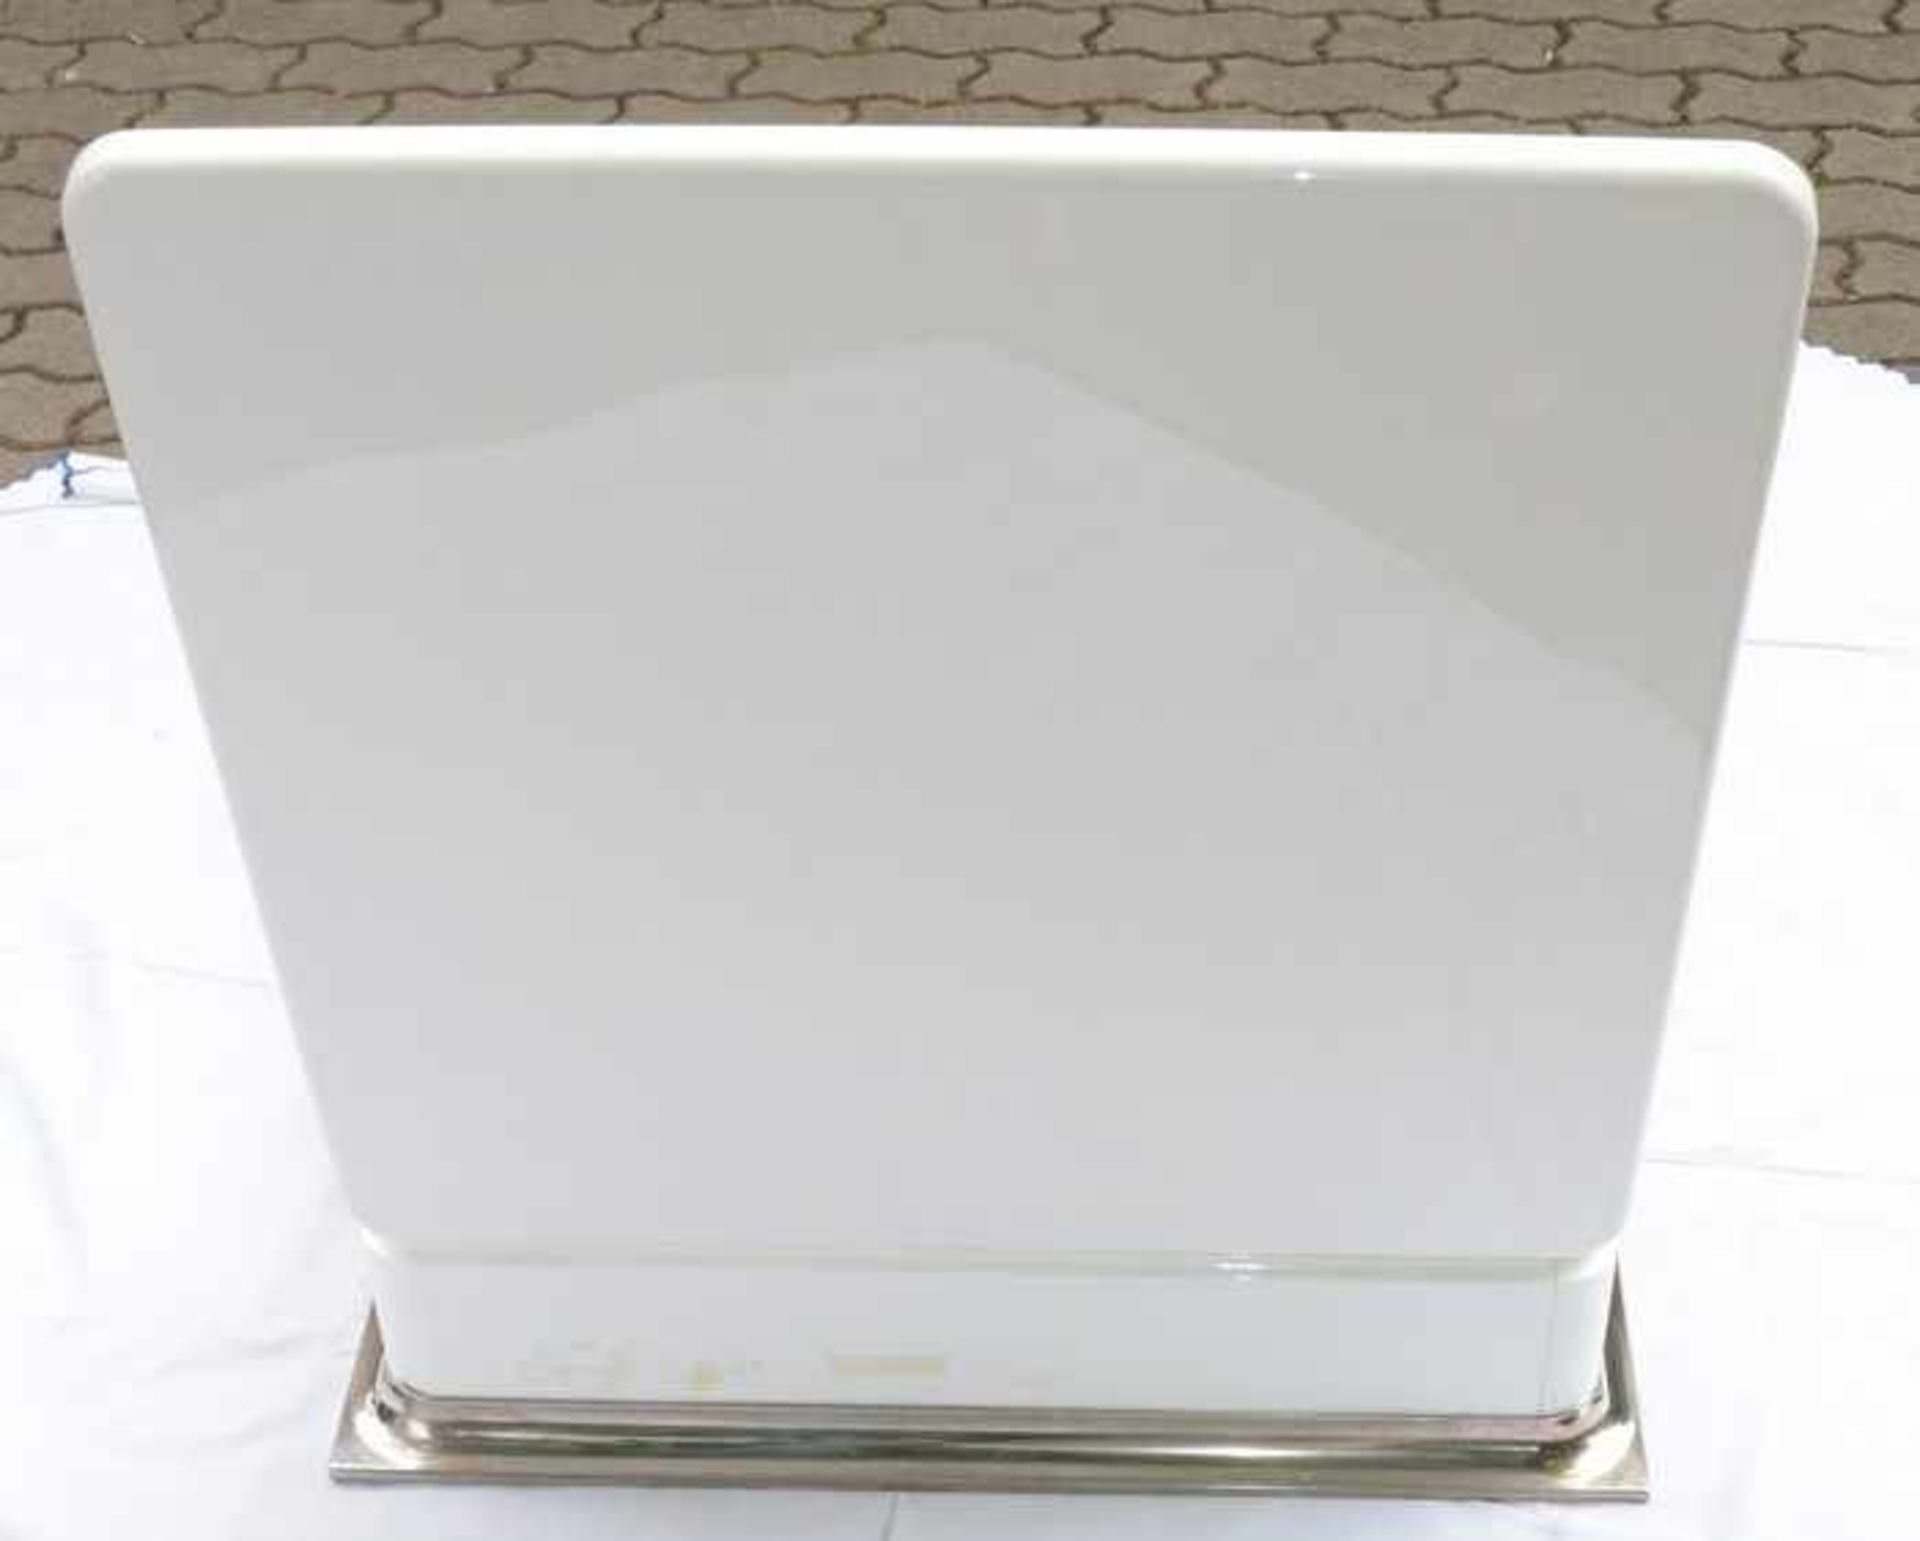 Wandschrank - BadezimmerKunststoff/Metall, rechteckiger Korpus, abgerundete Ecken, Rückseite Metall, - Bild 4 aus 5